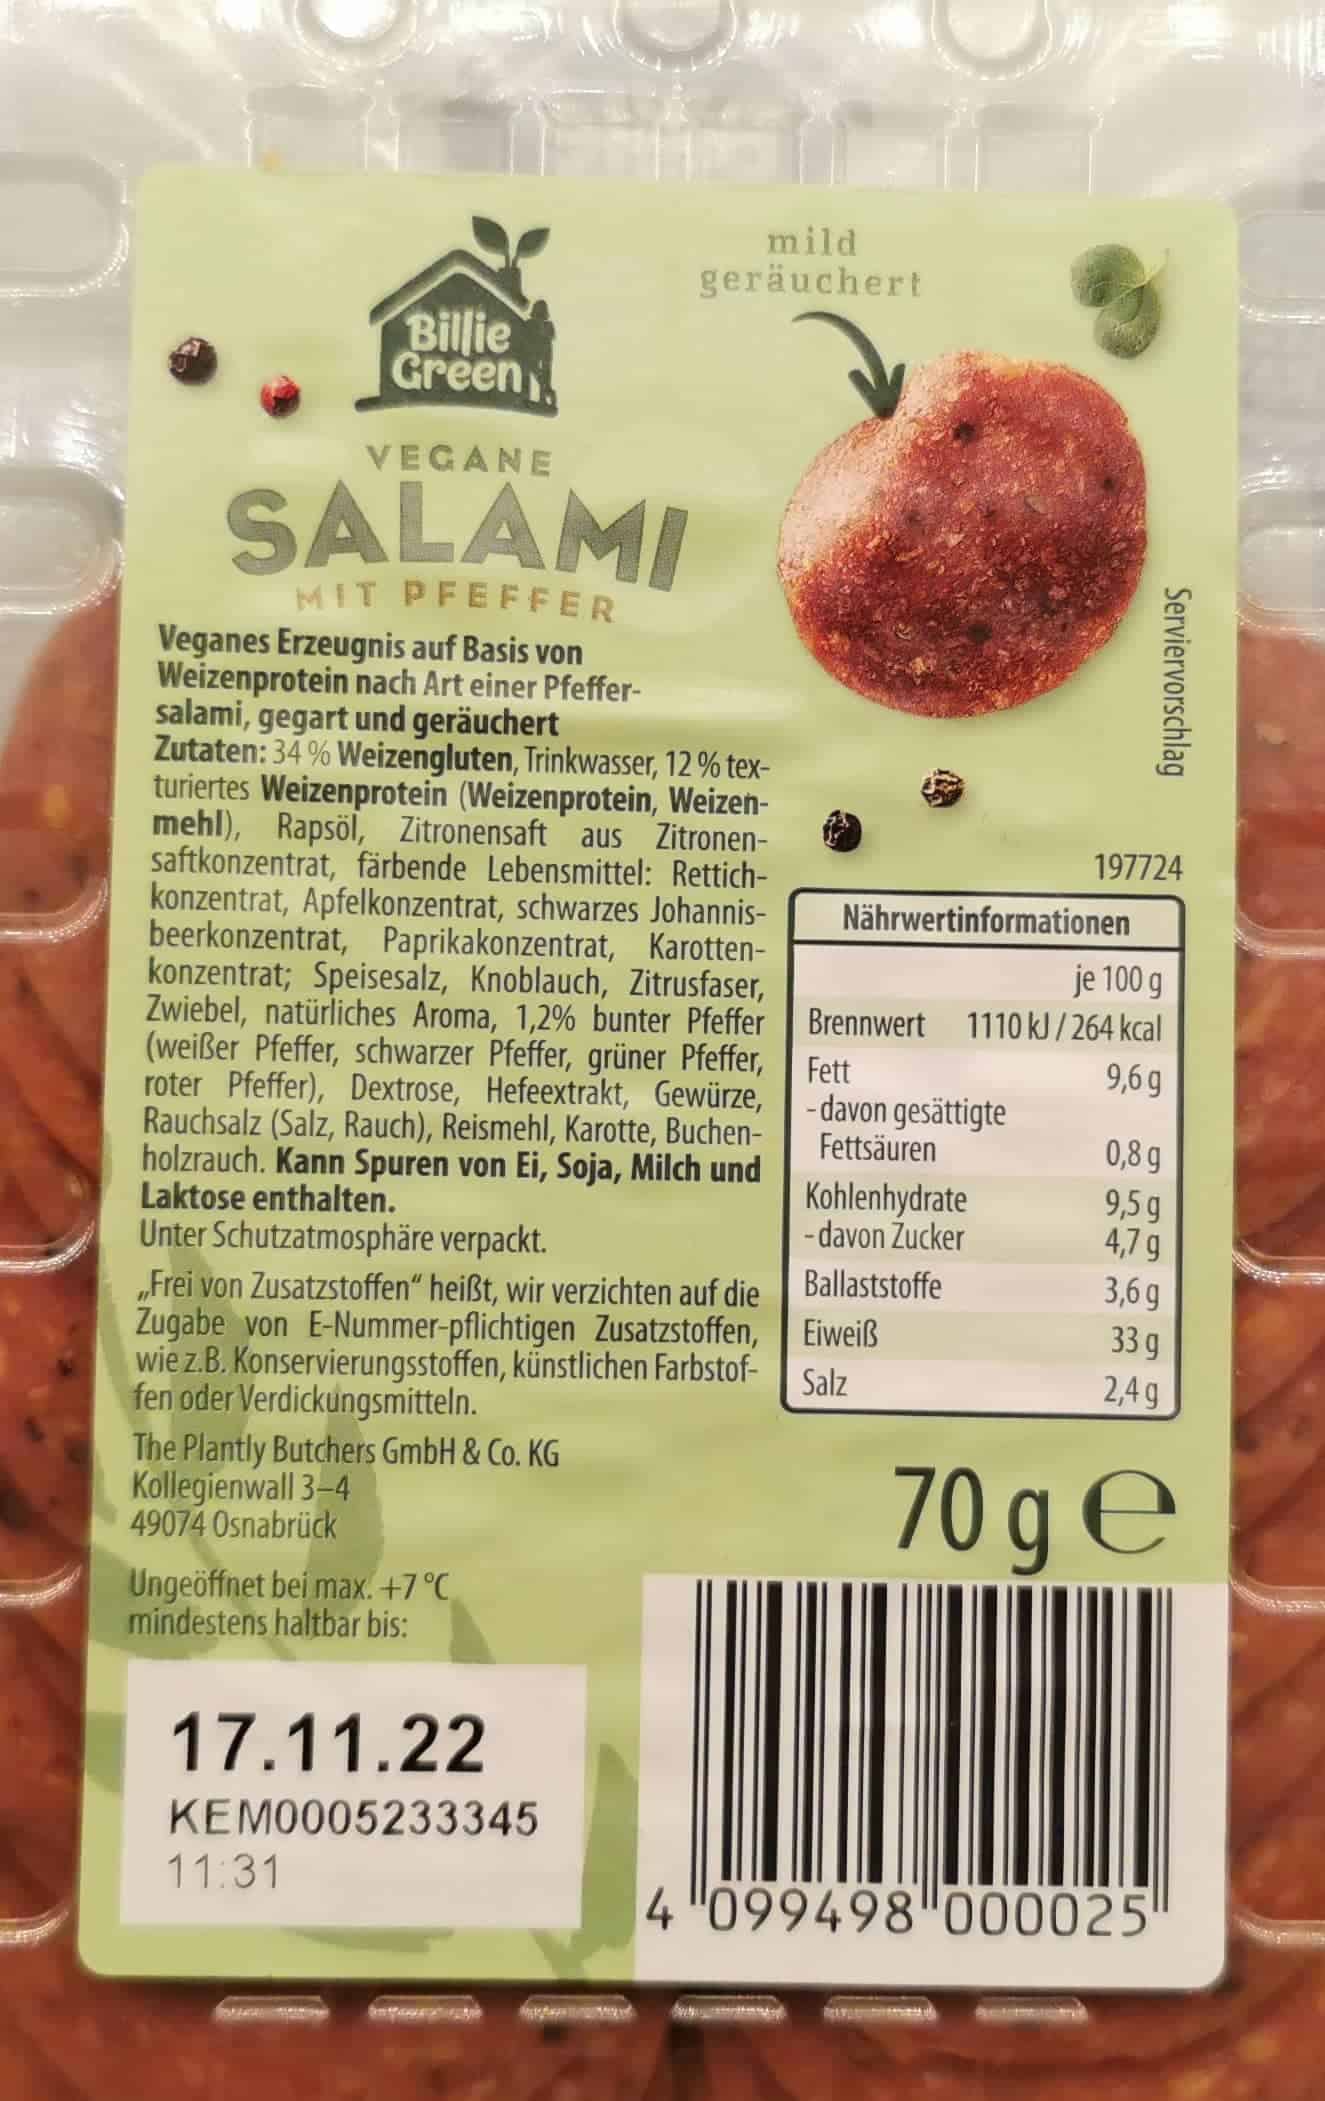 Vegane Salami mit Pfeffer von Billie Green: Inhaltsstoffe & Nährwerte